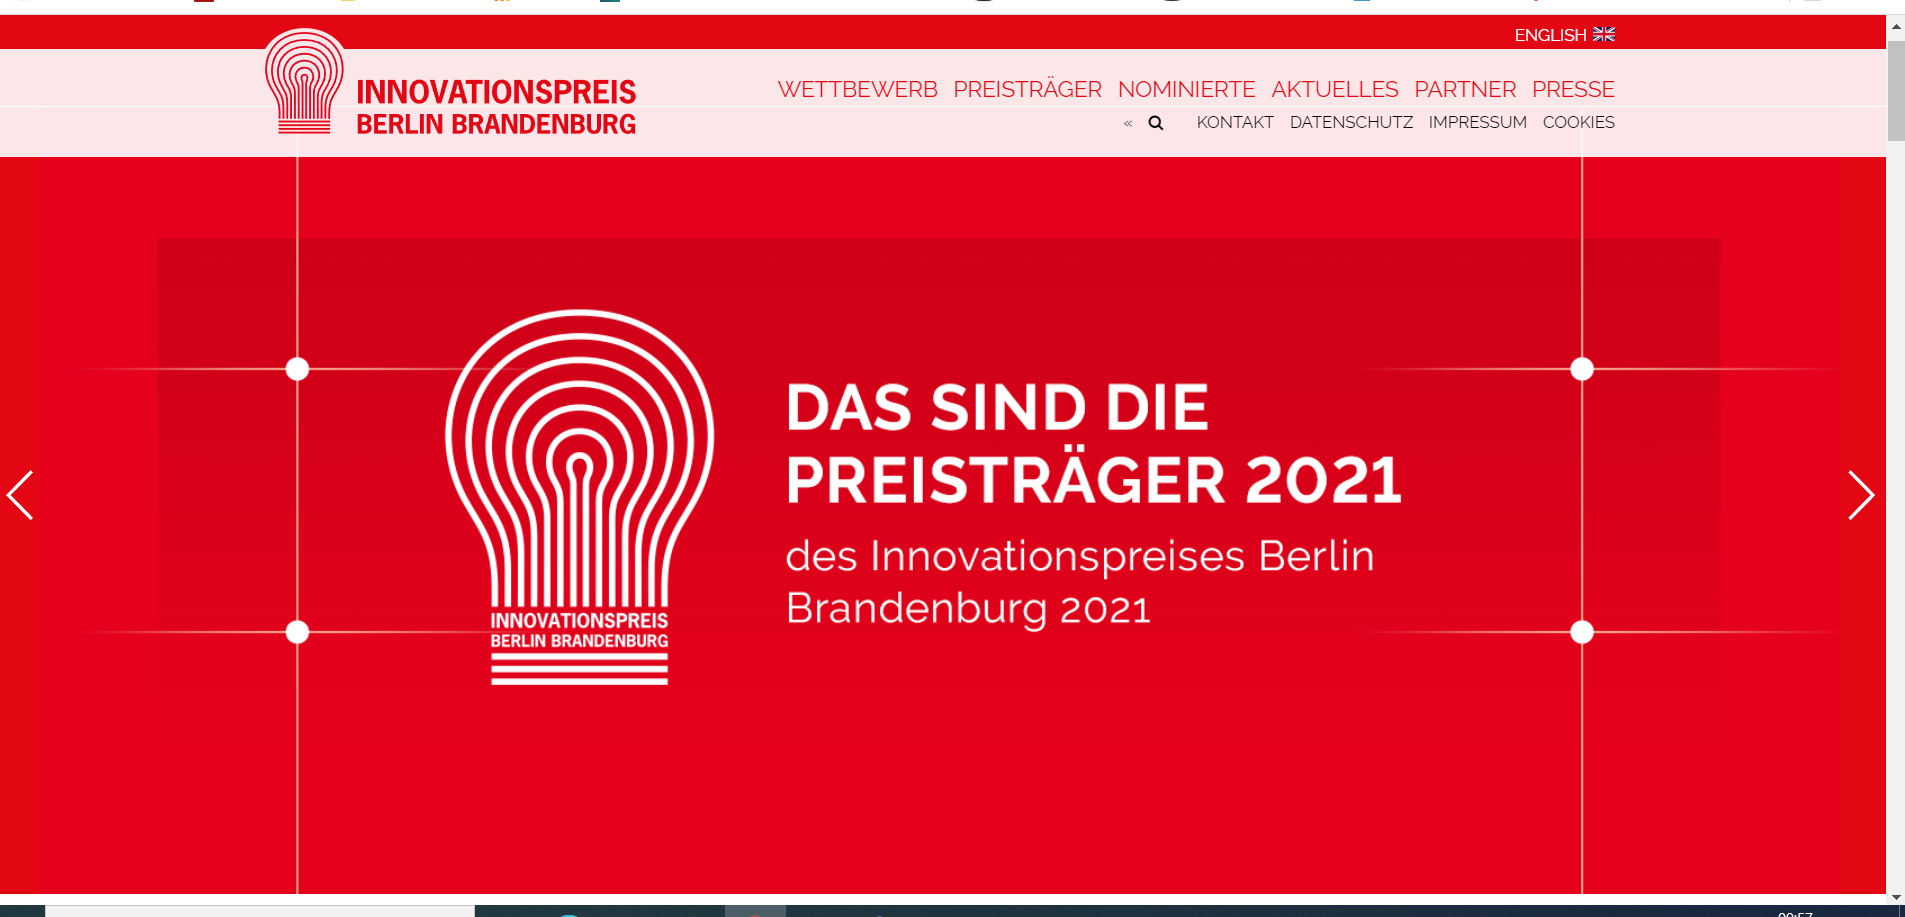 Banner Innovationspreis Berlin Brandenburg 2021 Preisträger